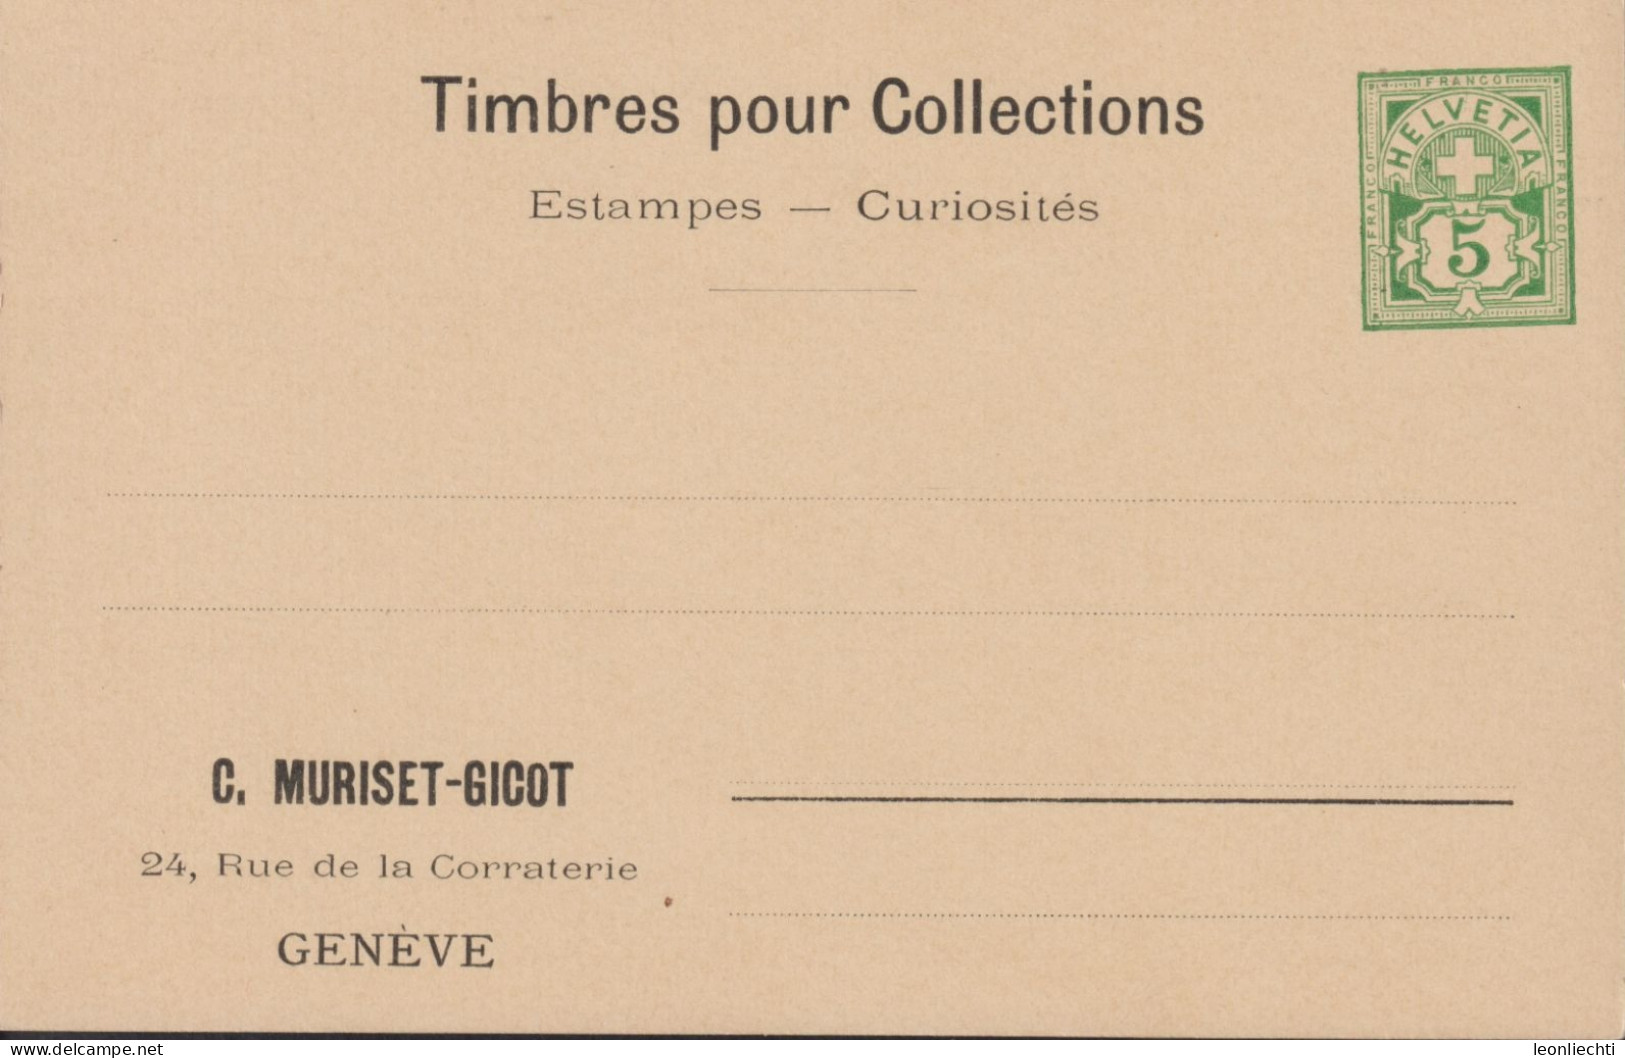 1907 Schweiz Privat-Postkarte, Zum: PrP 2 5 Cts Grün, Timbres Pour Collections, C. Muriset - Gicot Genève - Entiers Postaux